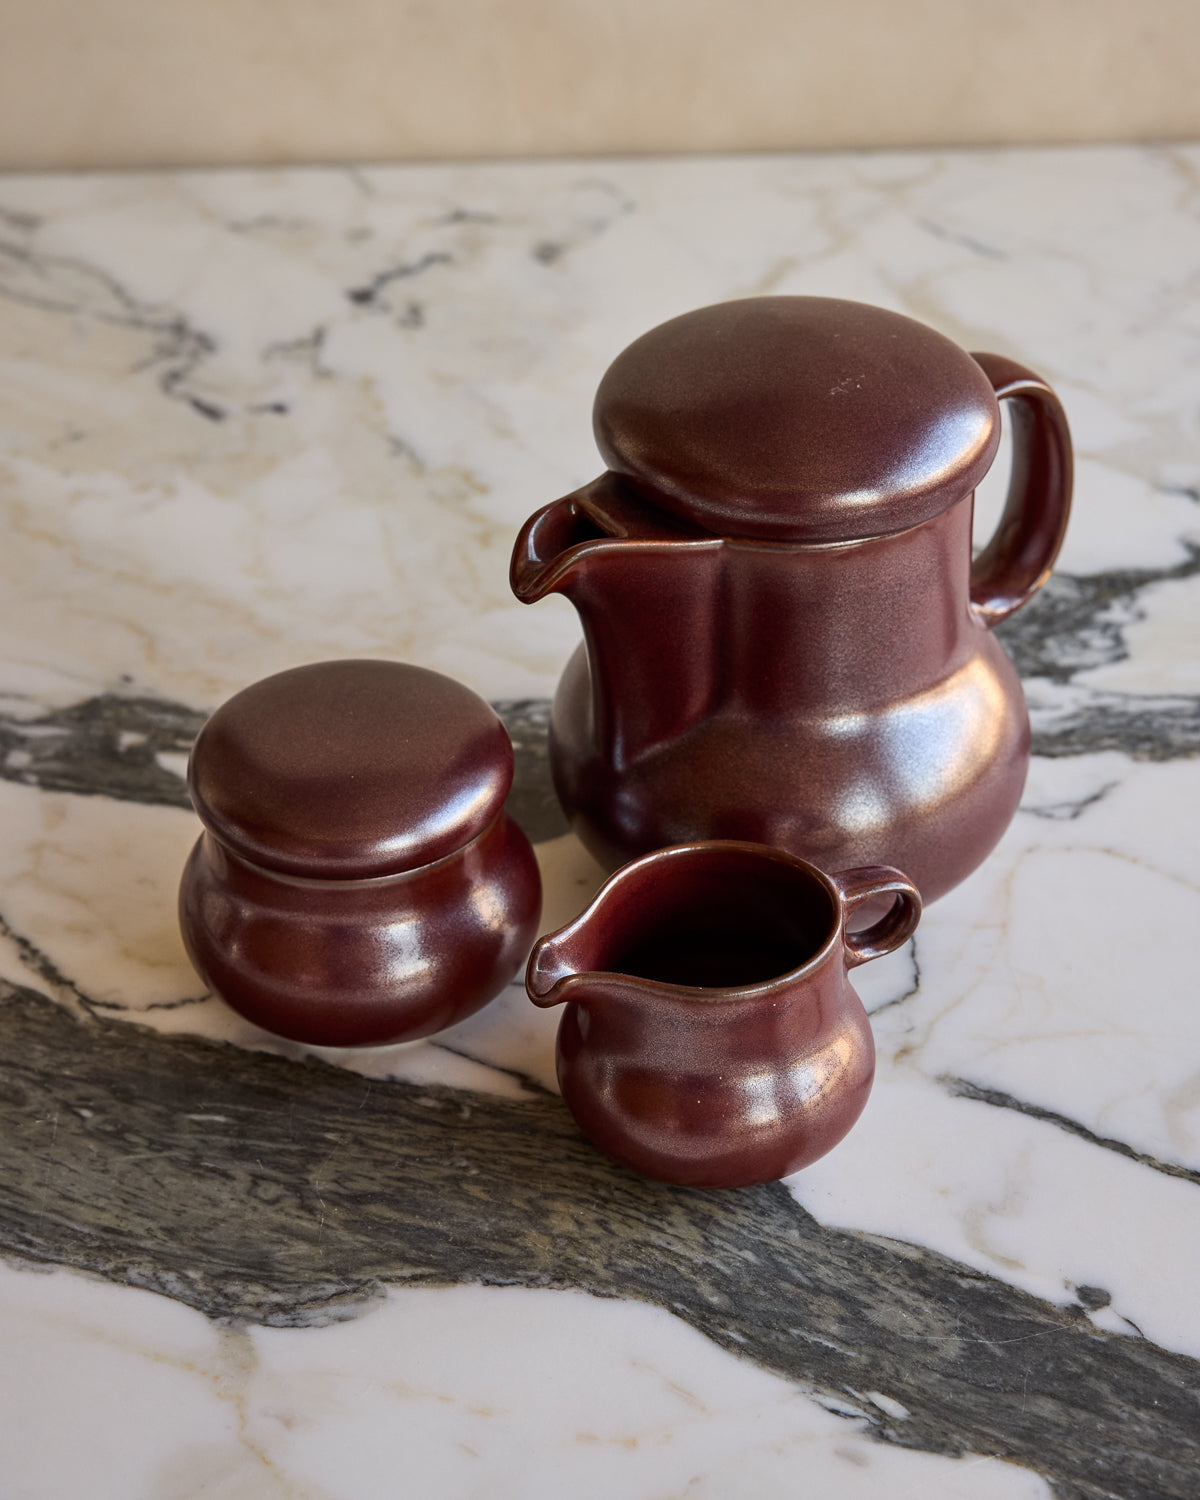 Red Ceramic Tea Set